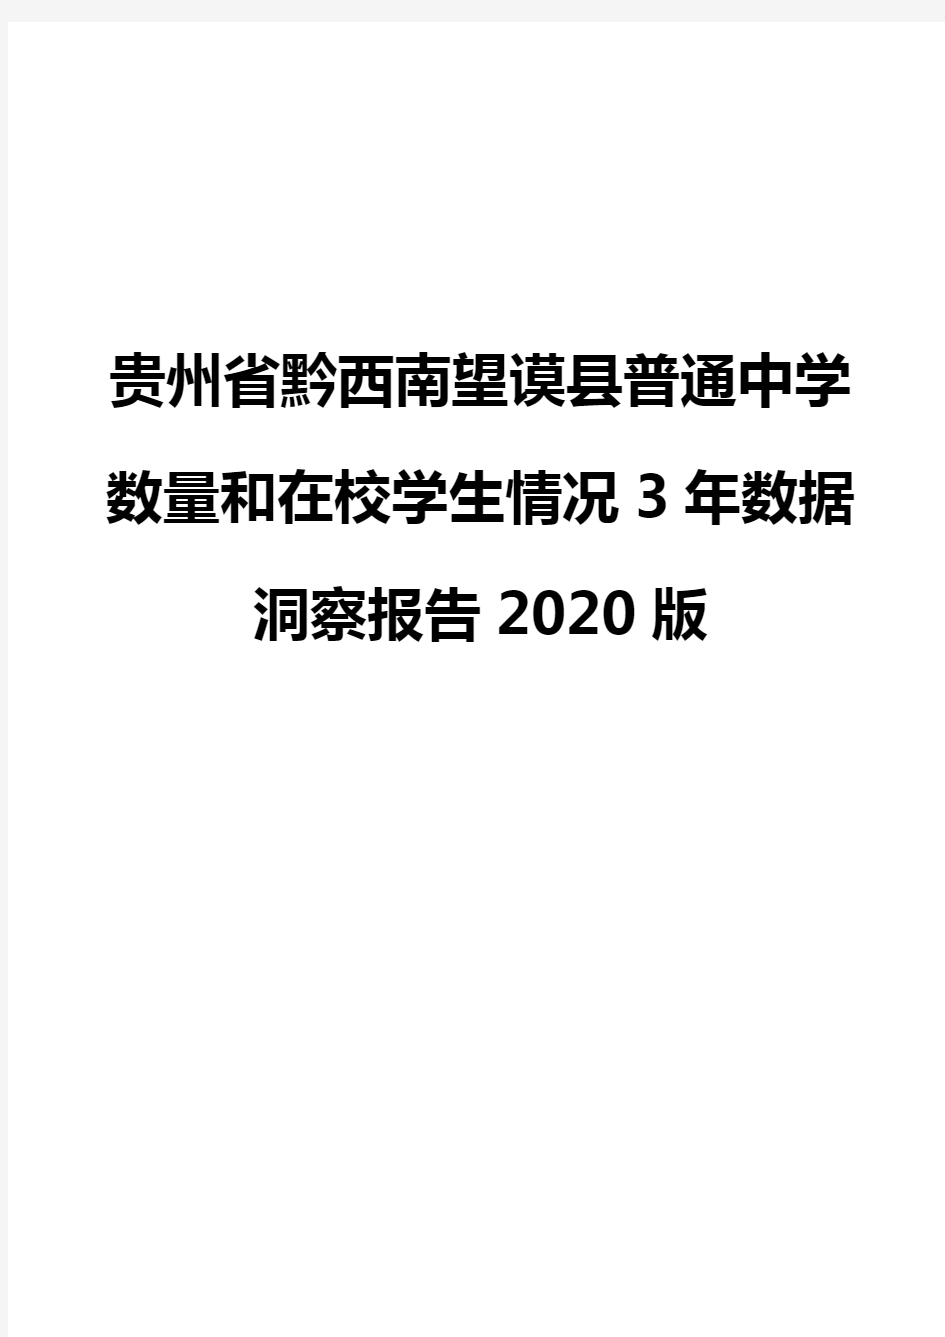 贵州省黔西南望谟县普通中学数量和在校学生情况3年数据洞察报告2020版